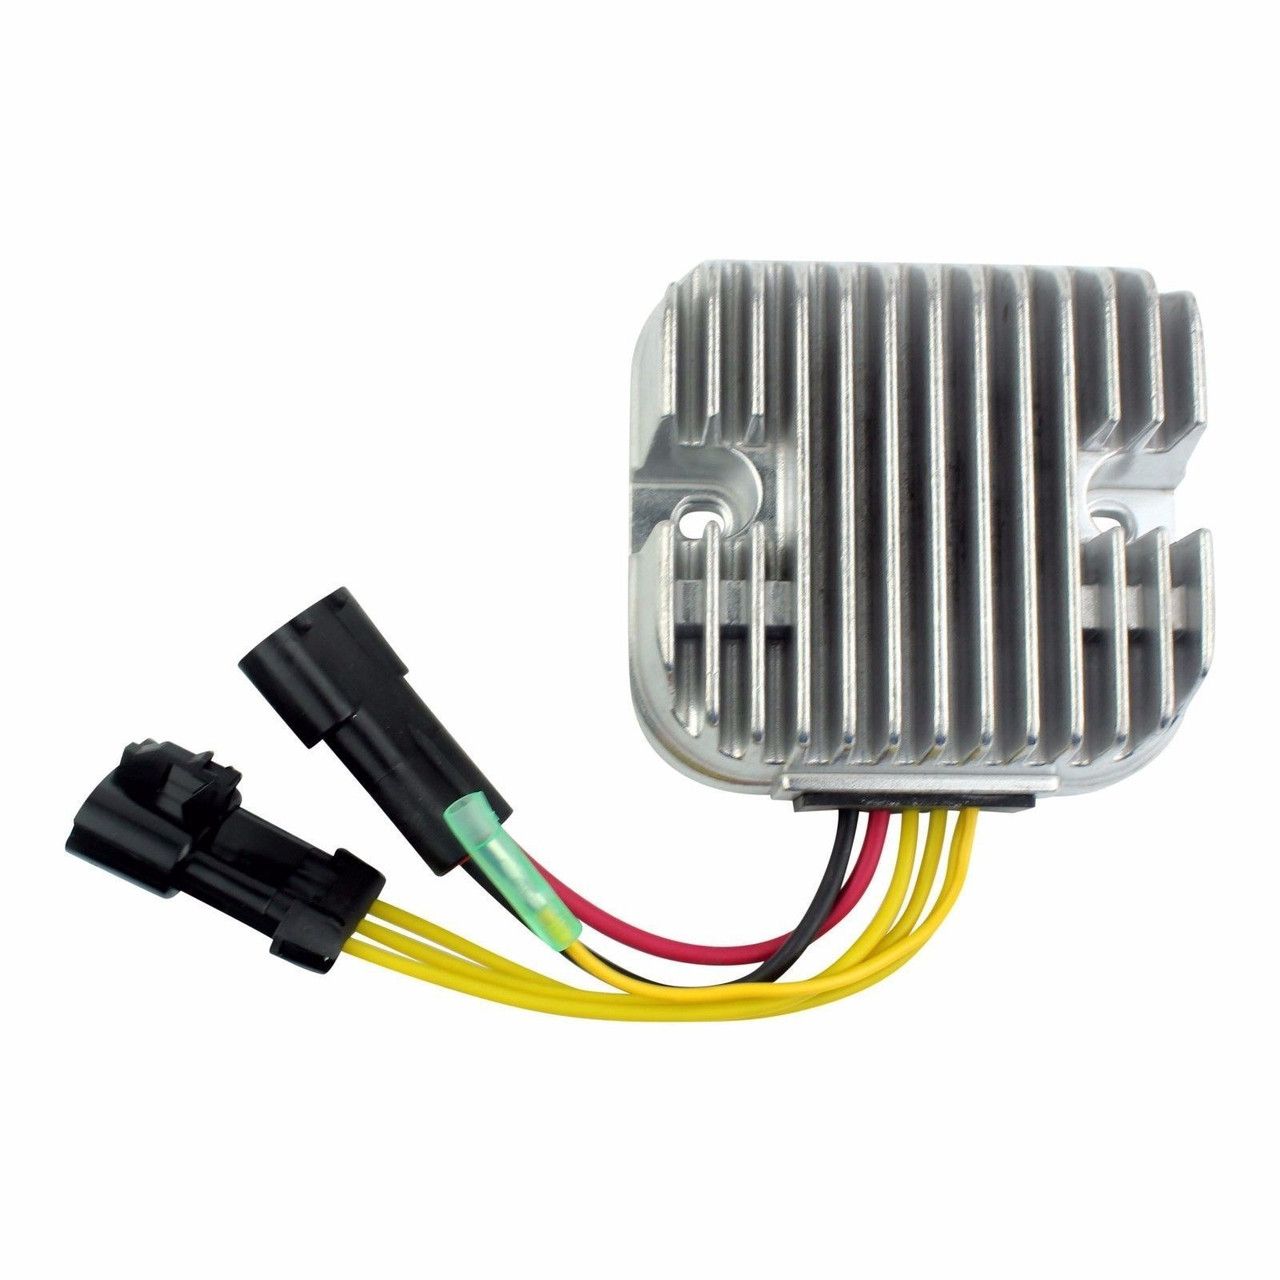 Polaris RZR 800 Mosfet Voltage Regulators by Quad Logic